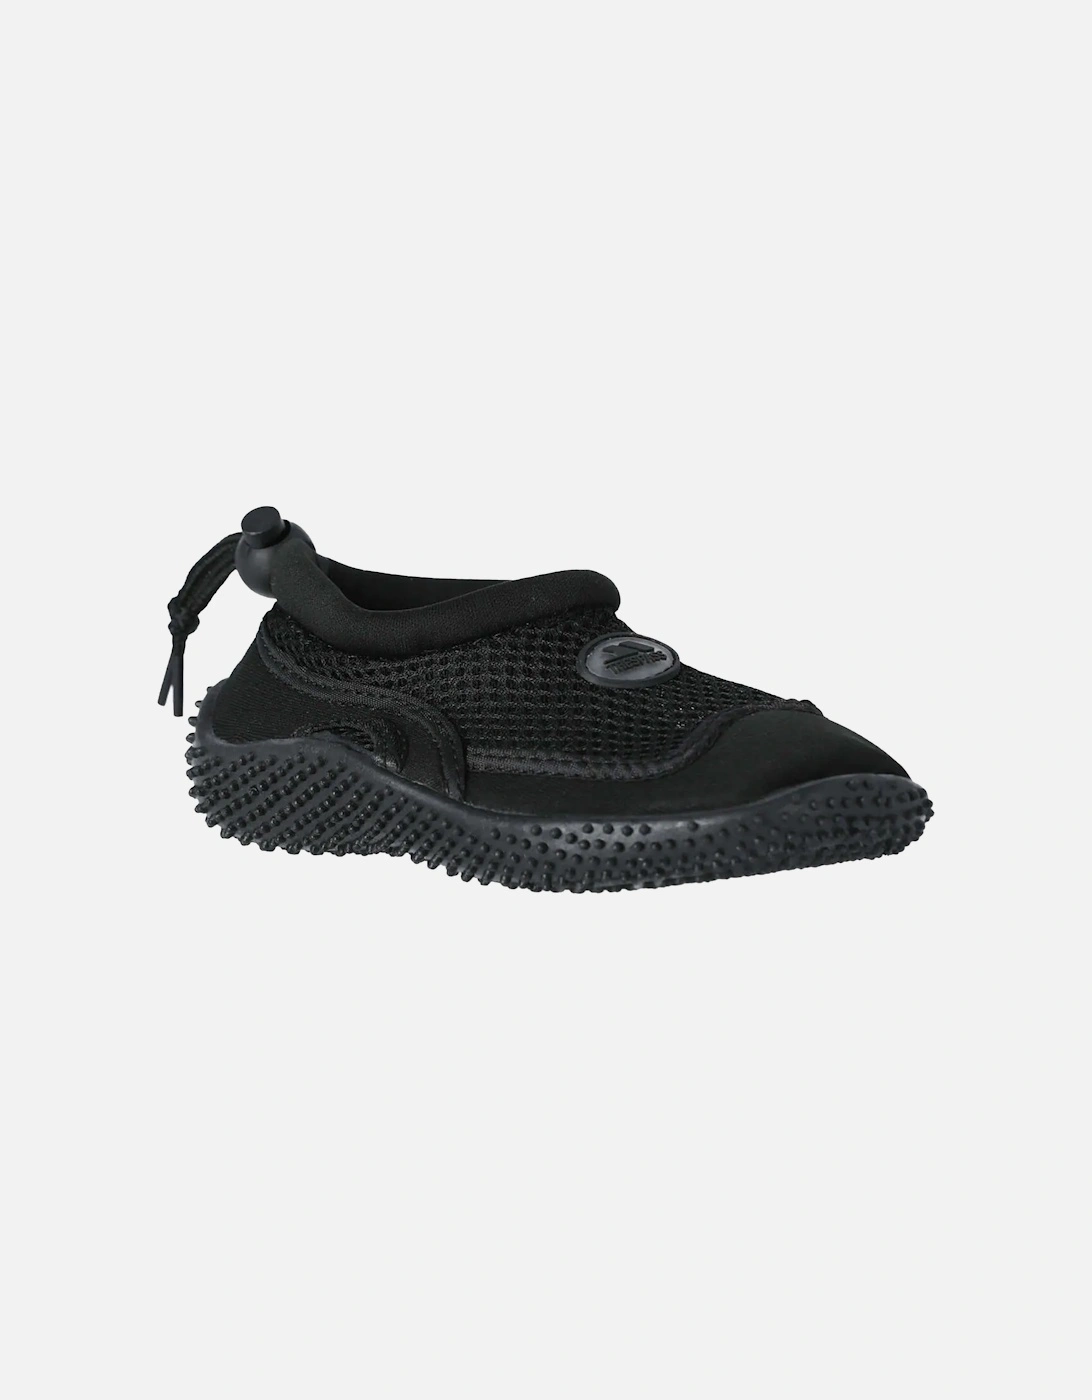 Adults Unisex Paddle Aqua Swimming Shoe, 6 of 5